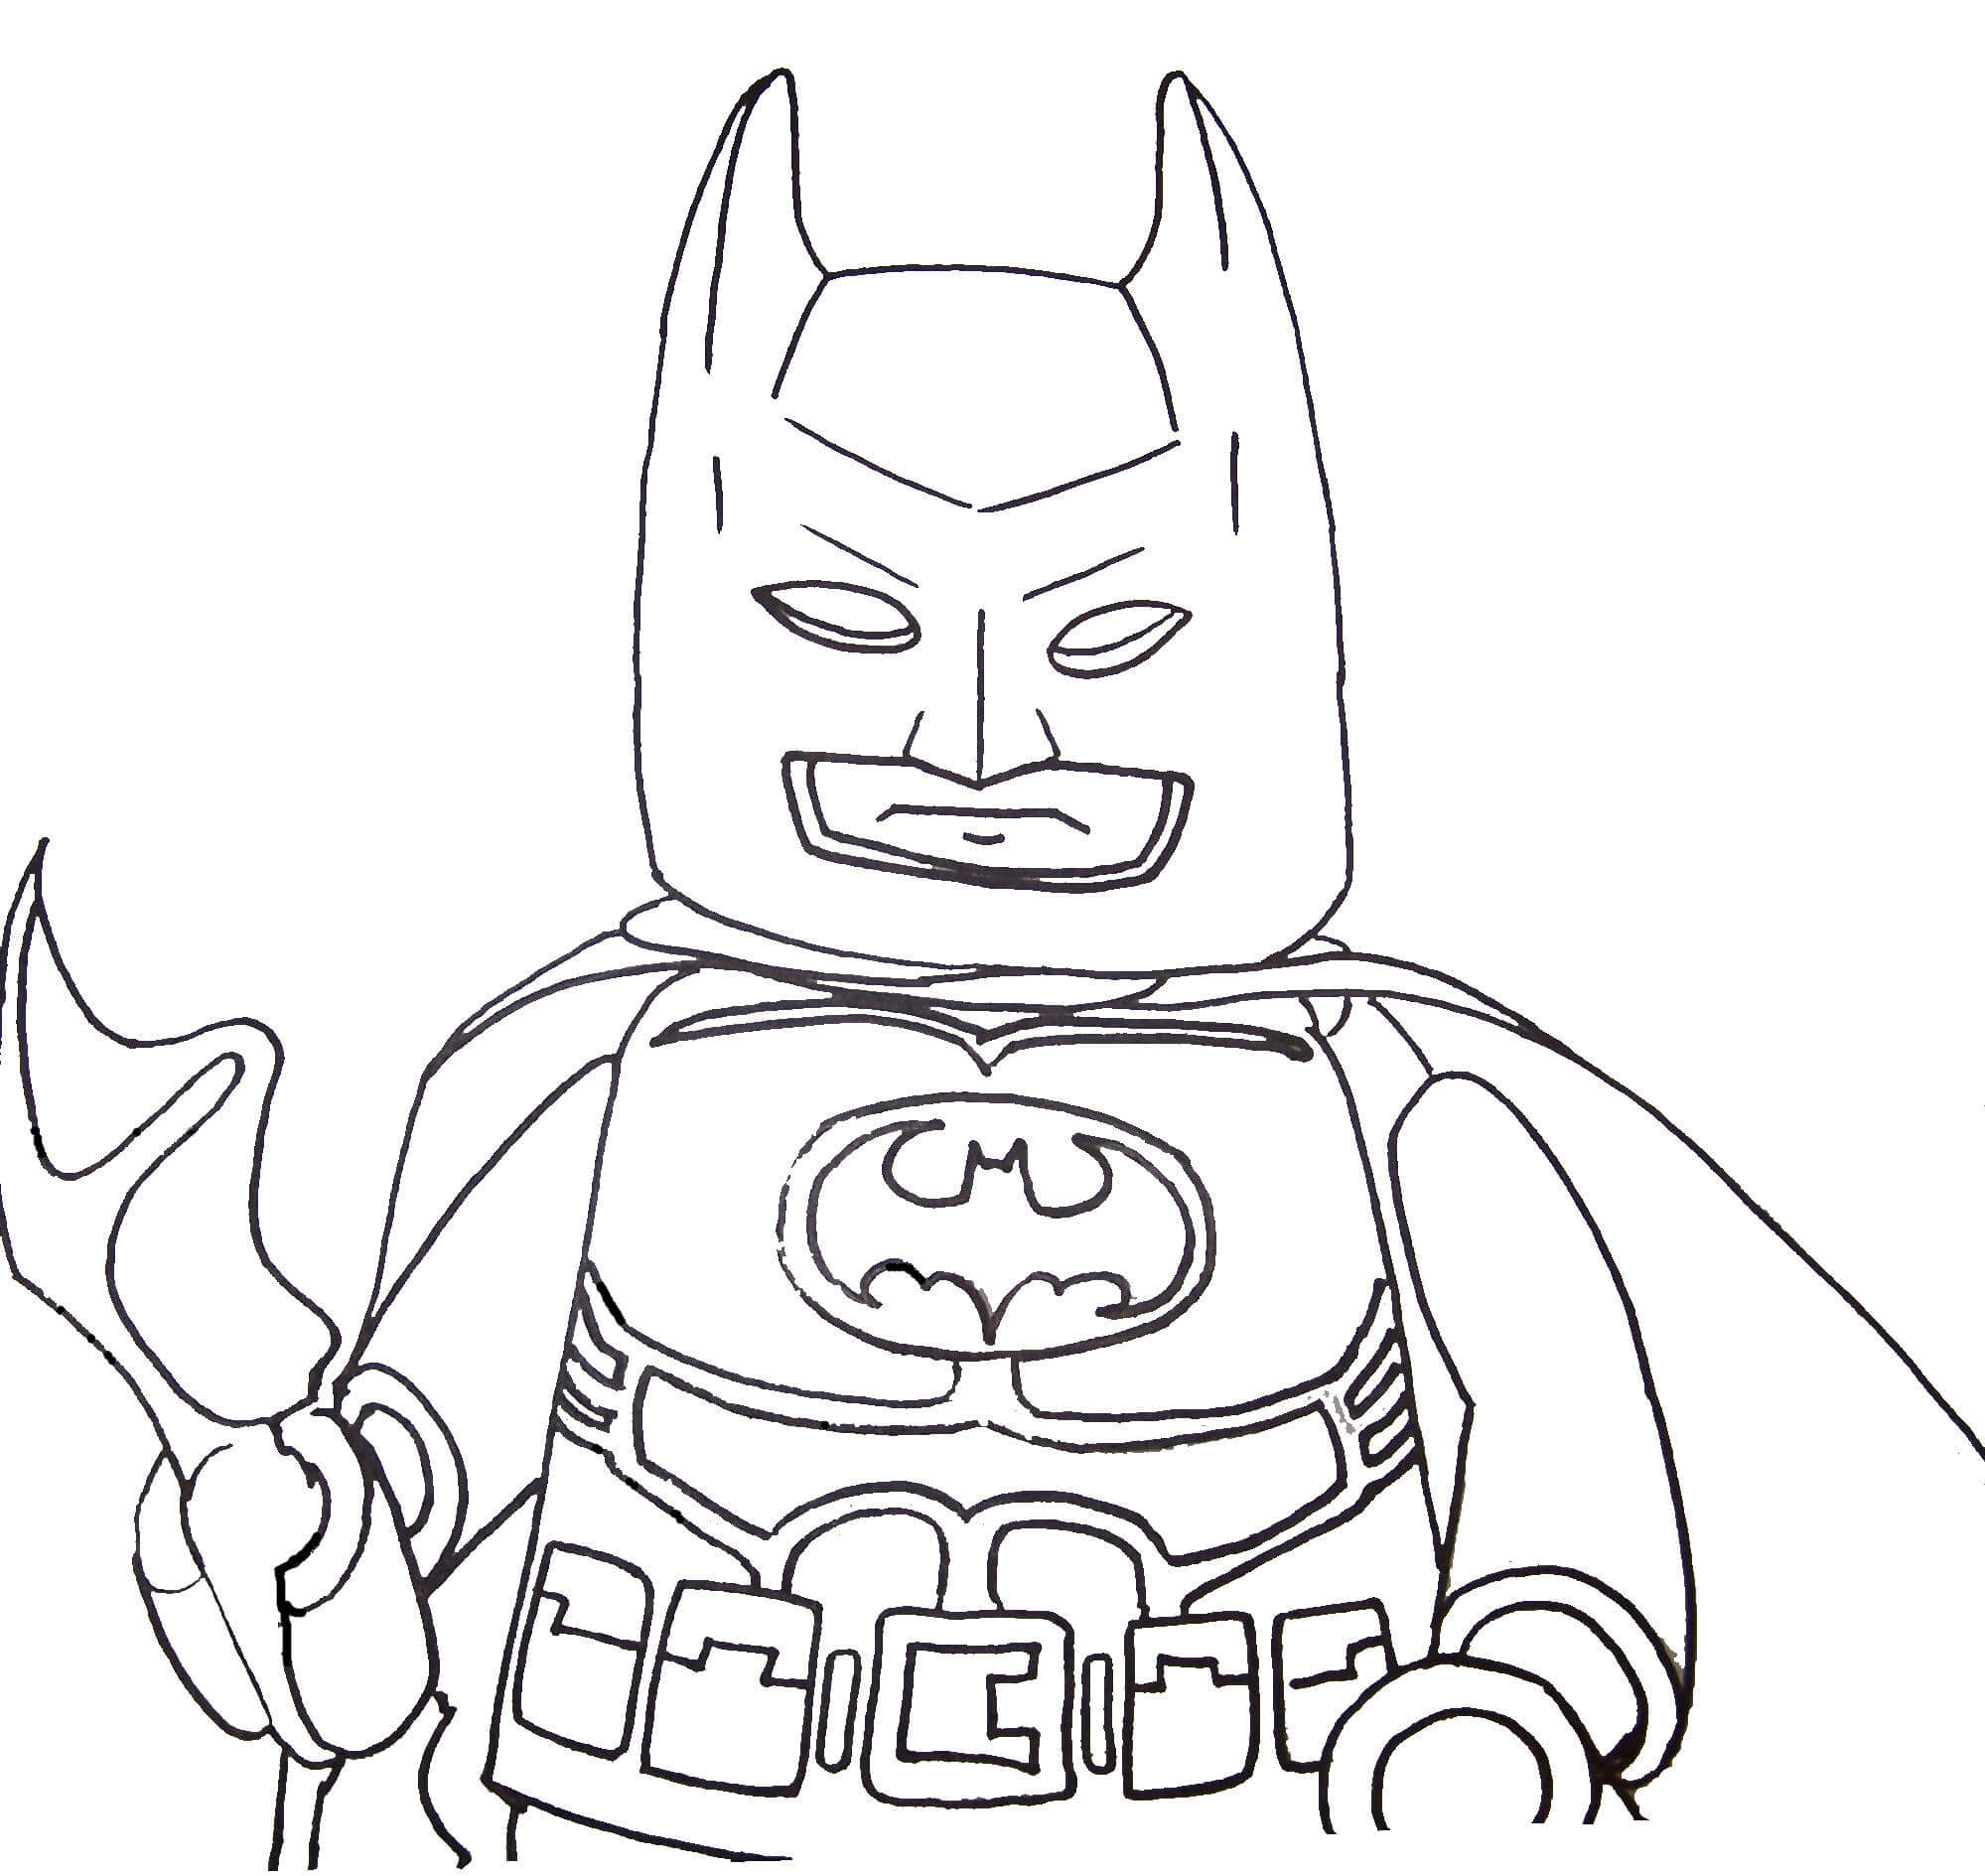 Arma de sujeción de la cara de Batman de Lego